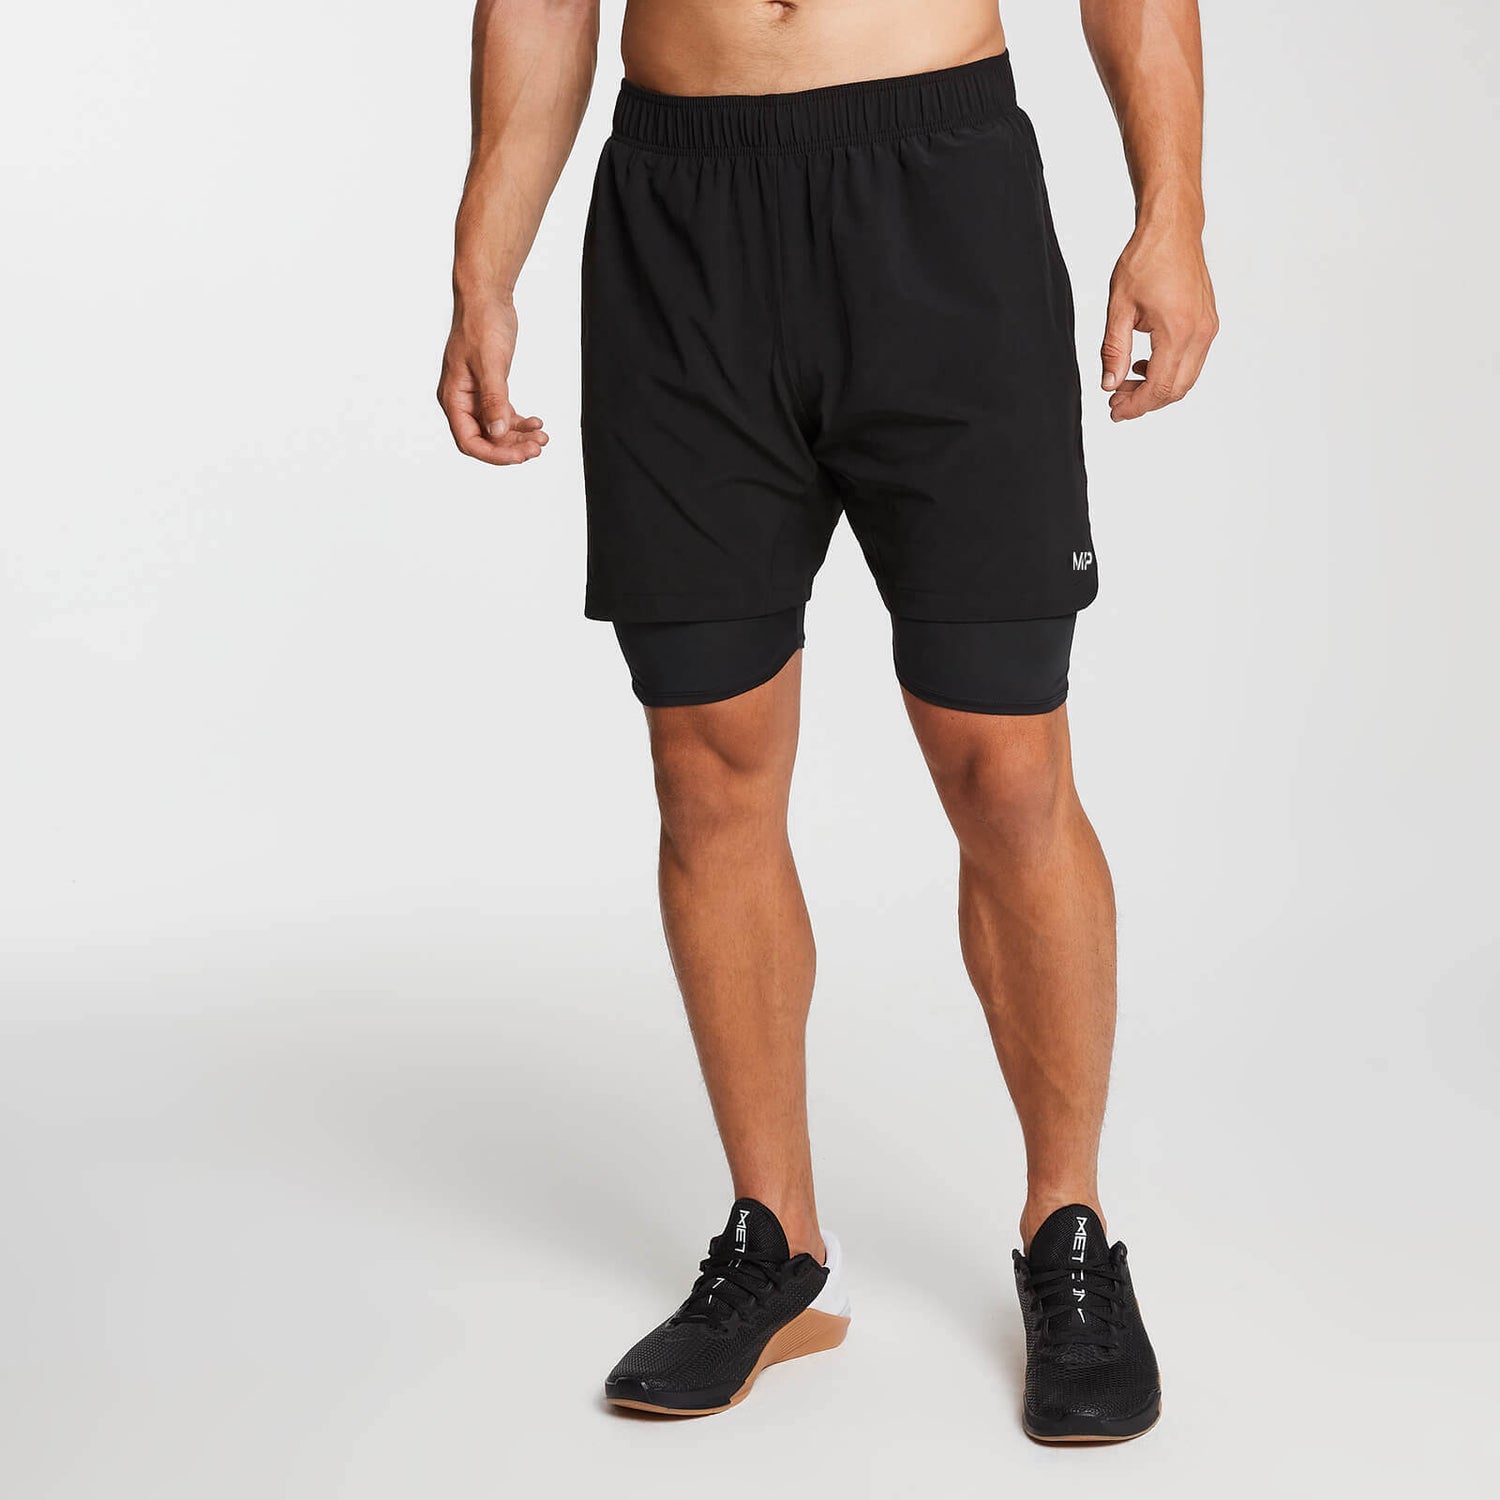 Moške hlače za trening MP Essentials 2 v 1 - črne - XS